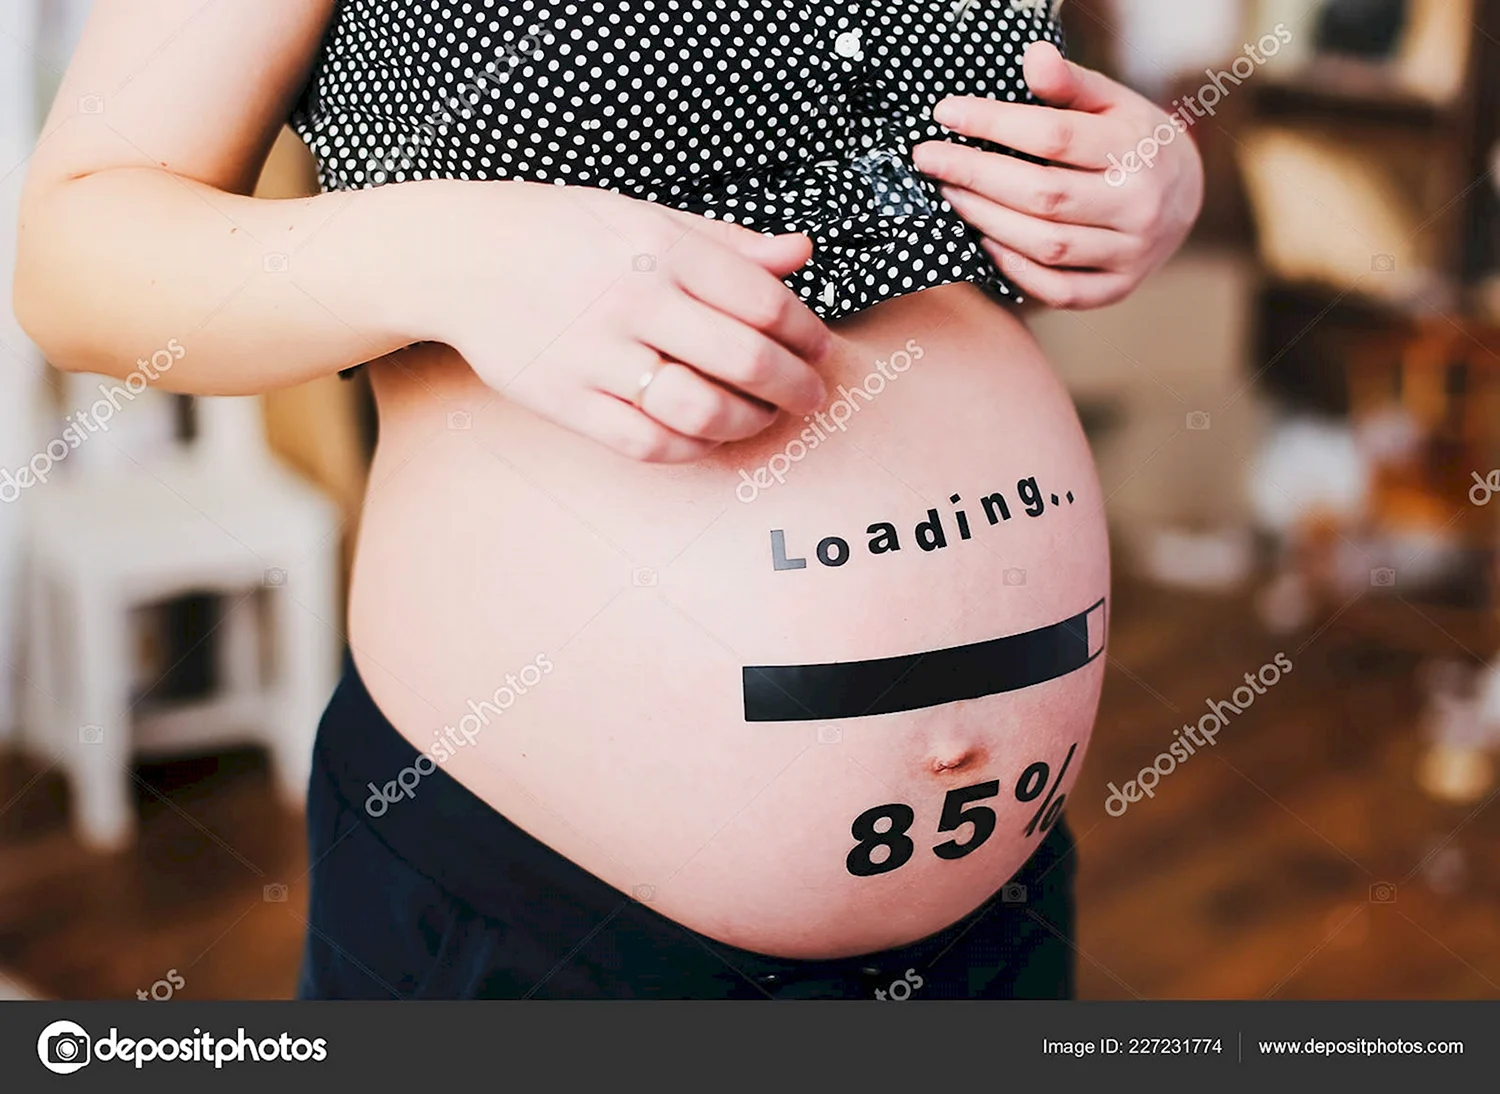 Pregnant funny